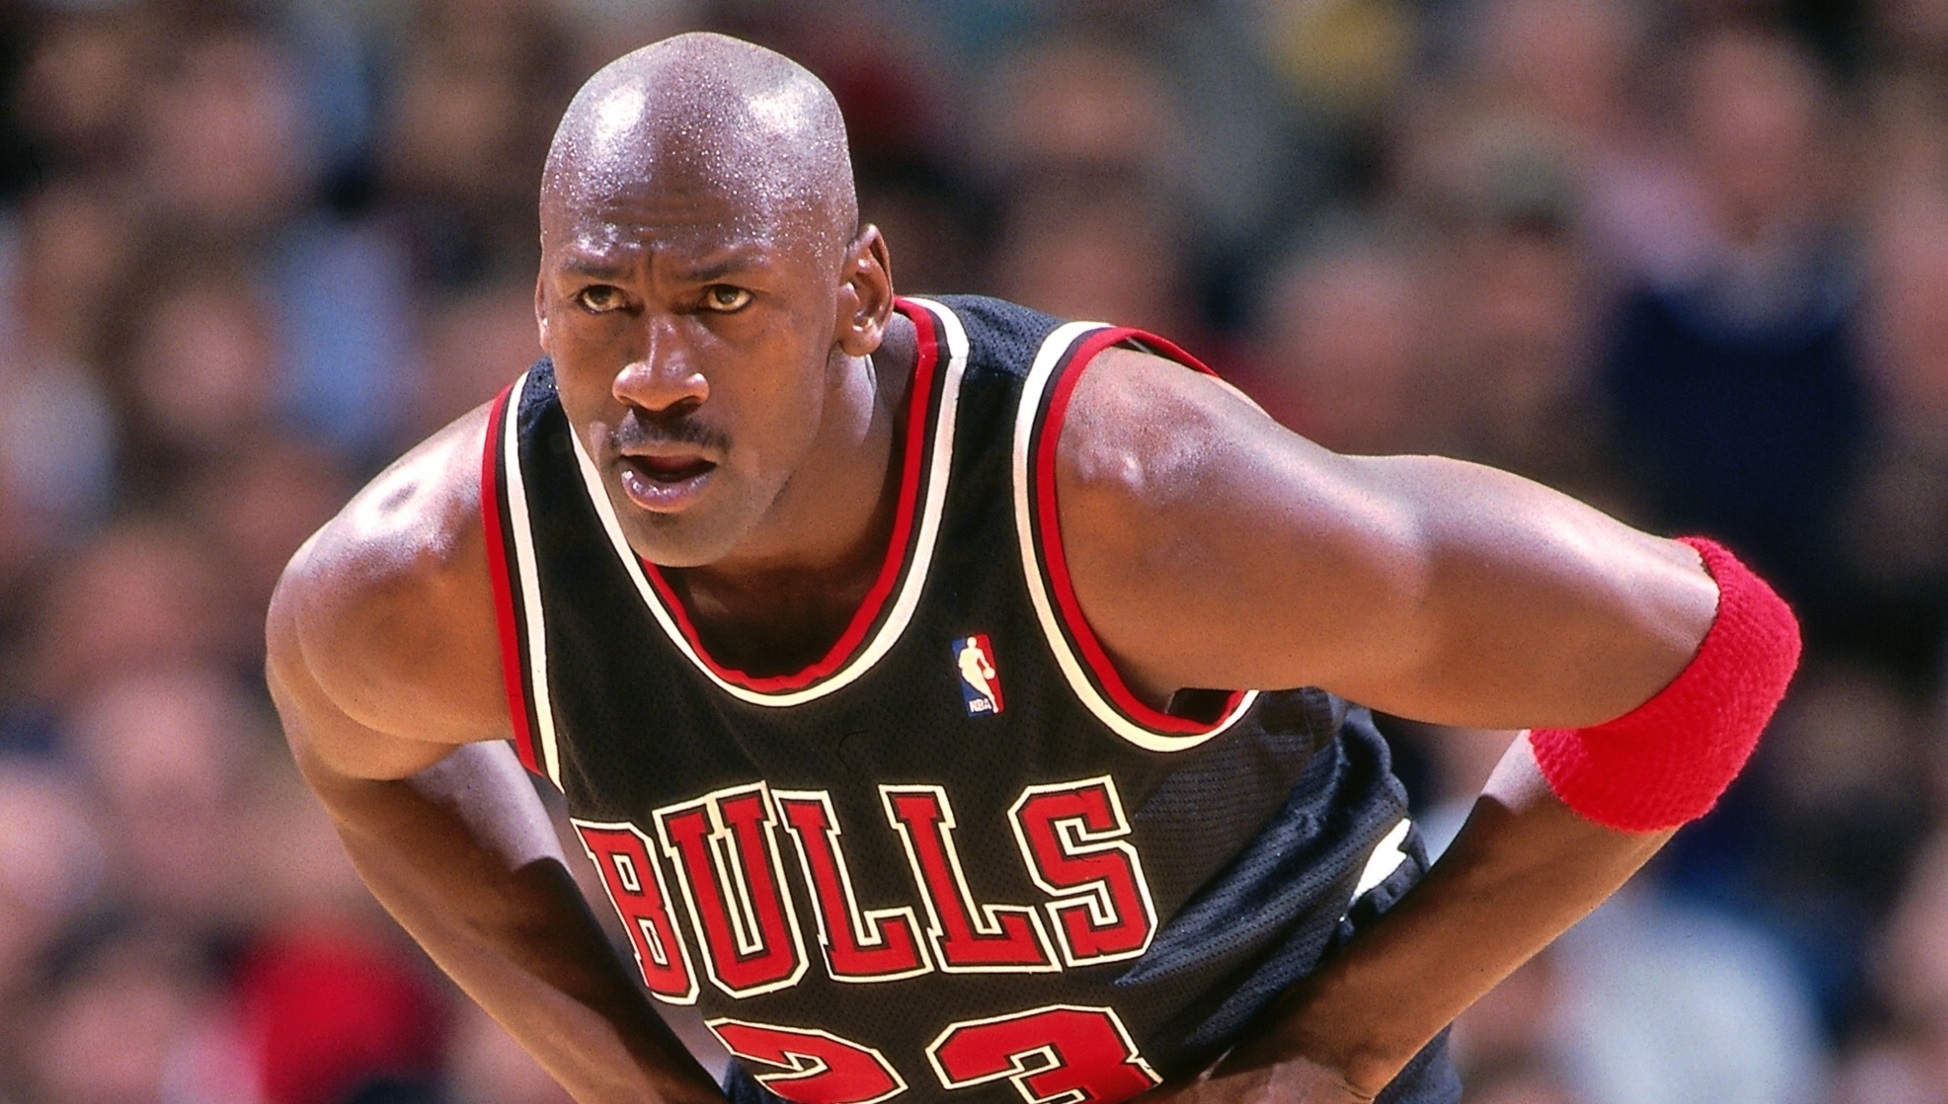 Huyền thoại bóng rổ Michael Jordan.